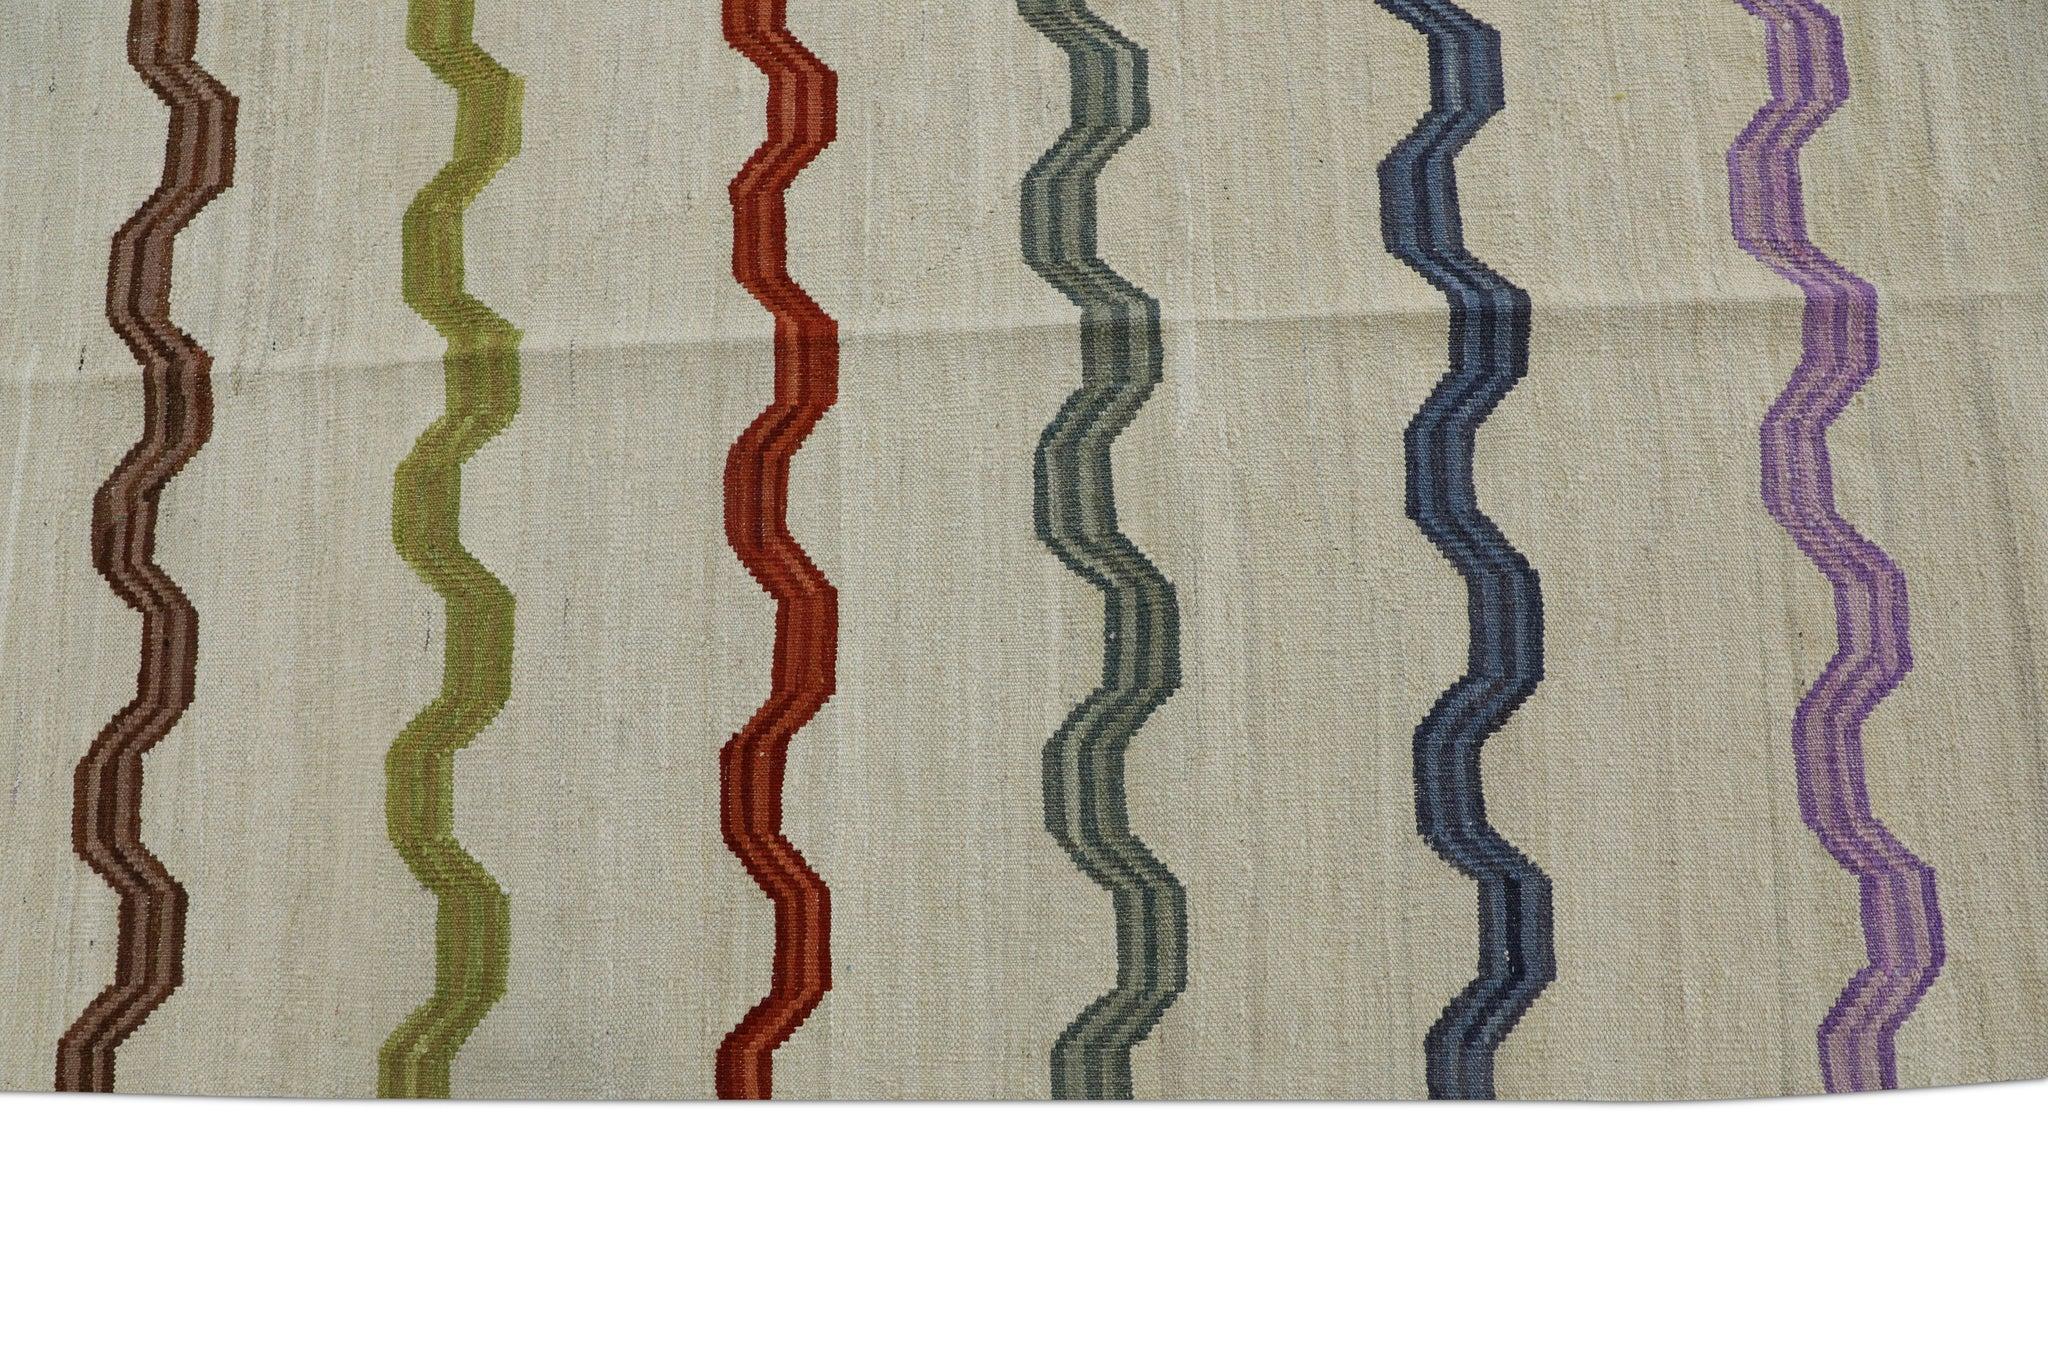 Vegetable Dyed Beige Flatweave Handmade Wool Rug in Multicolor Striped Pattern 8'1